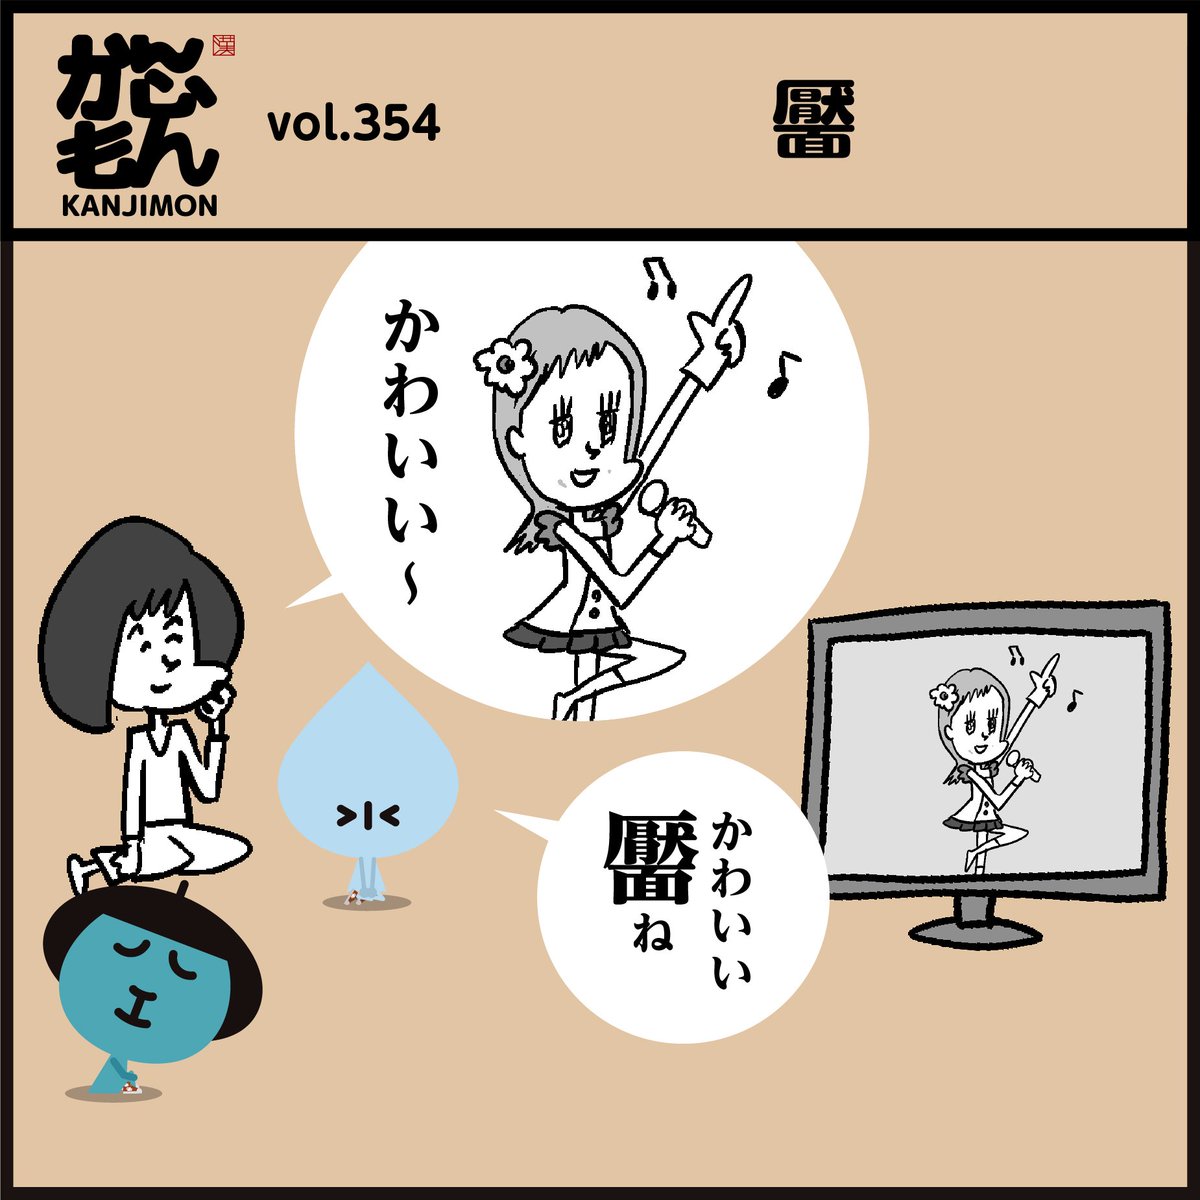 漢字【靨】読めましたか〜?
😅イメージと違いますよね。
#イラスト #豆知識 #クイズ 
#4コマ漫画 #可愛い 